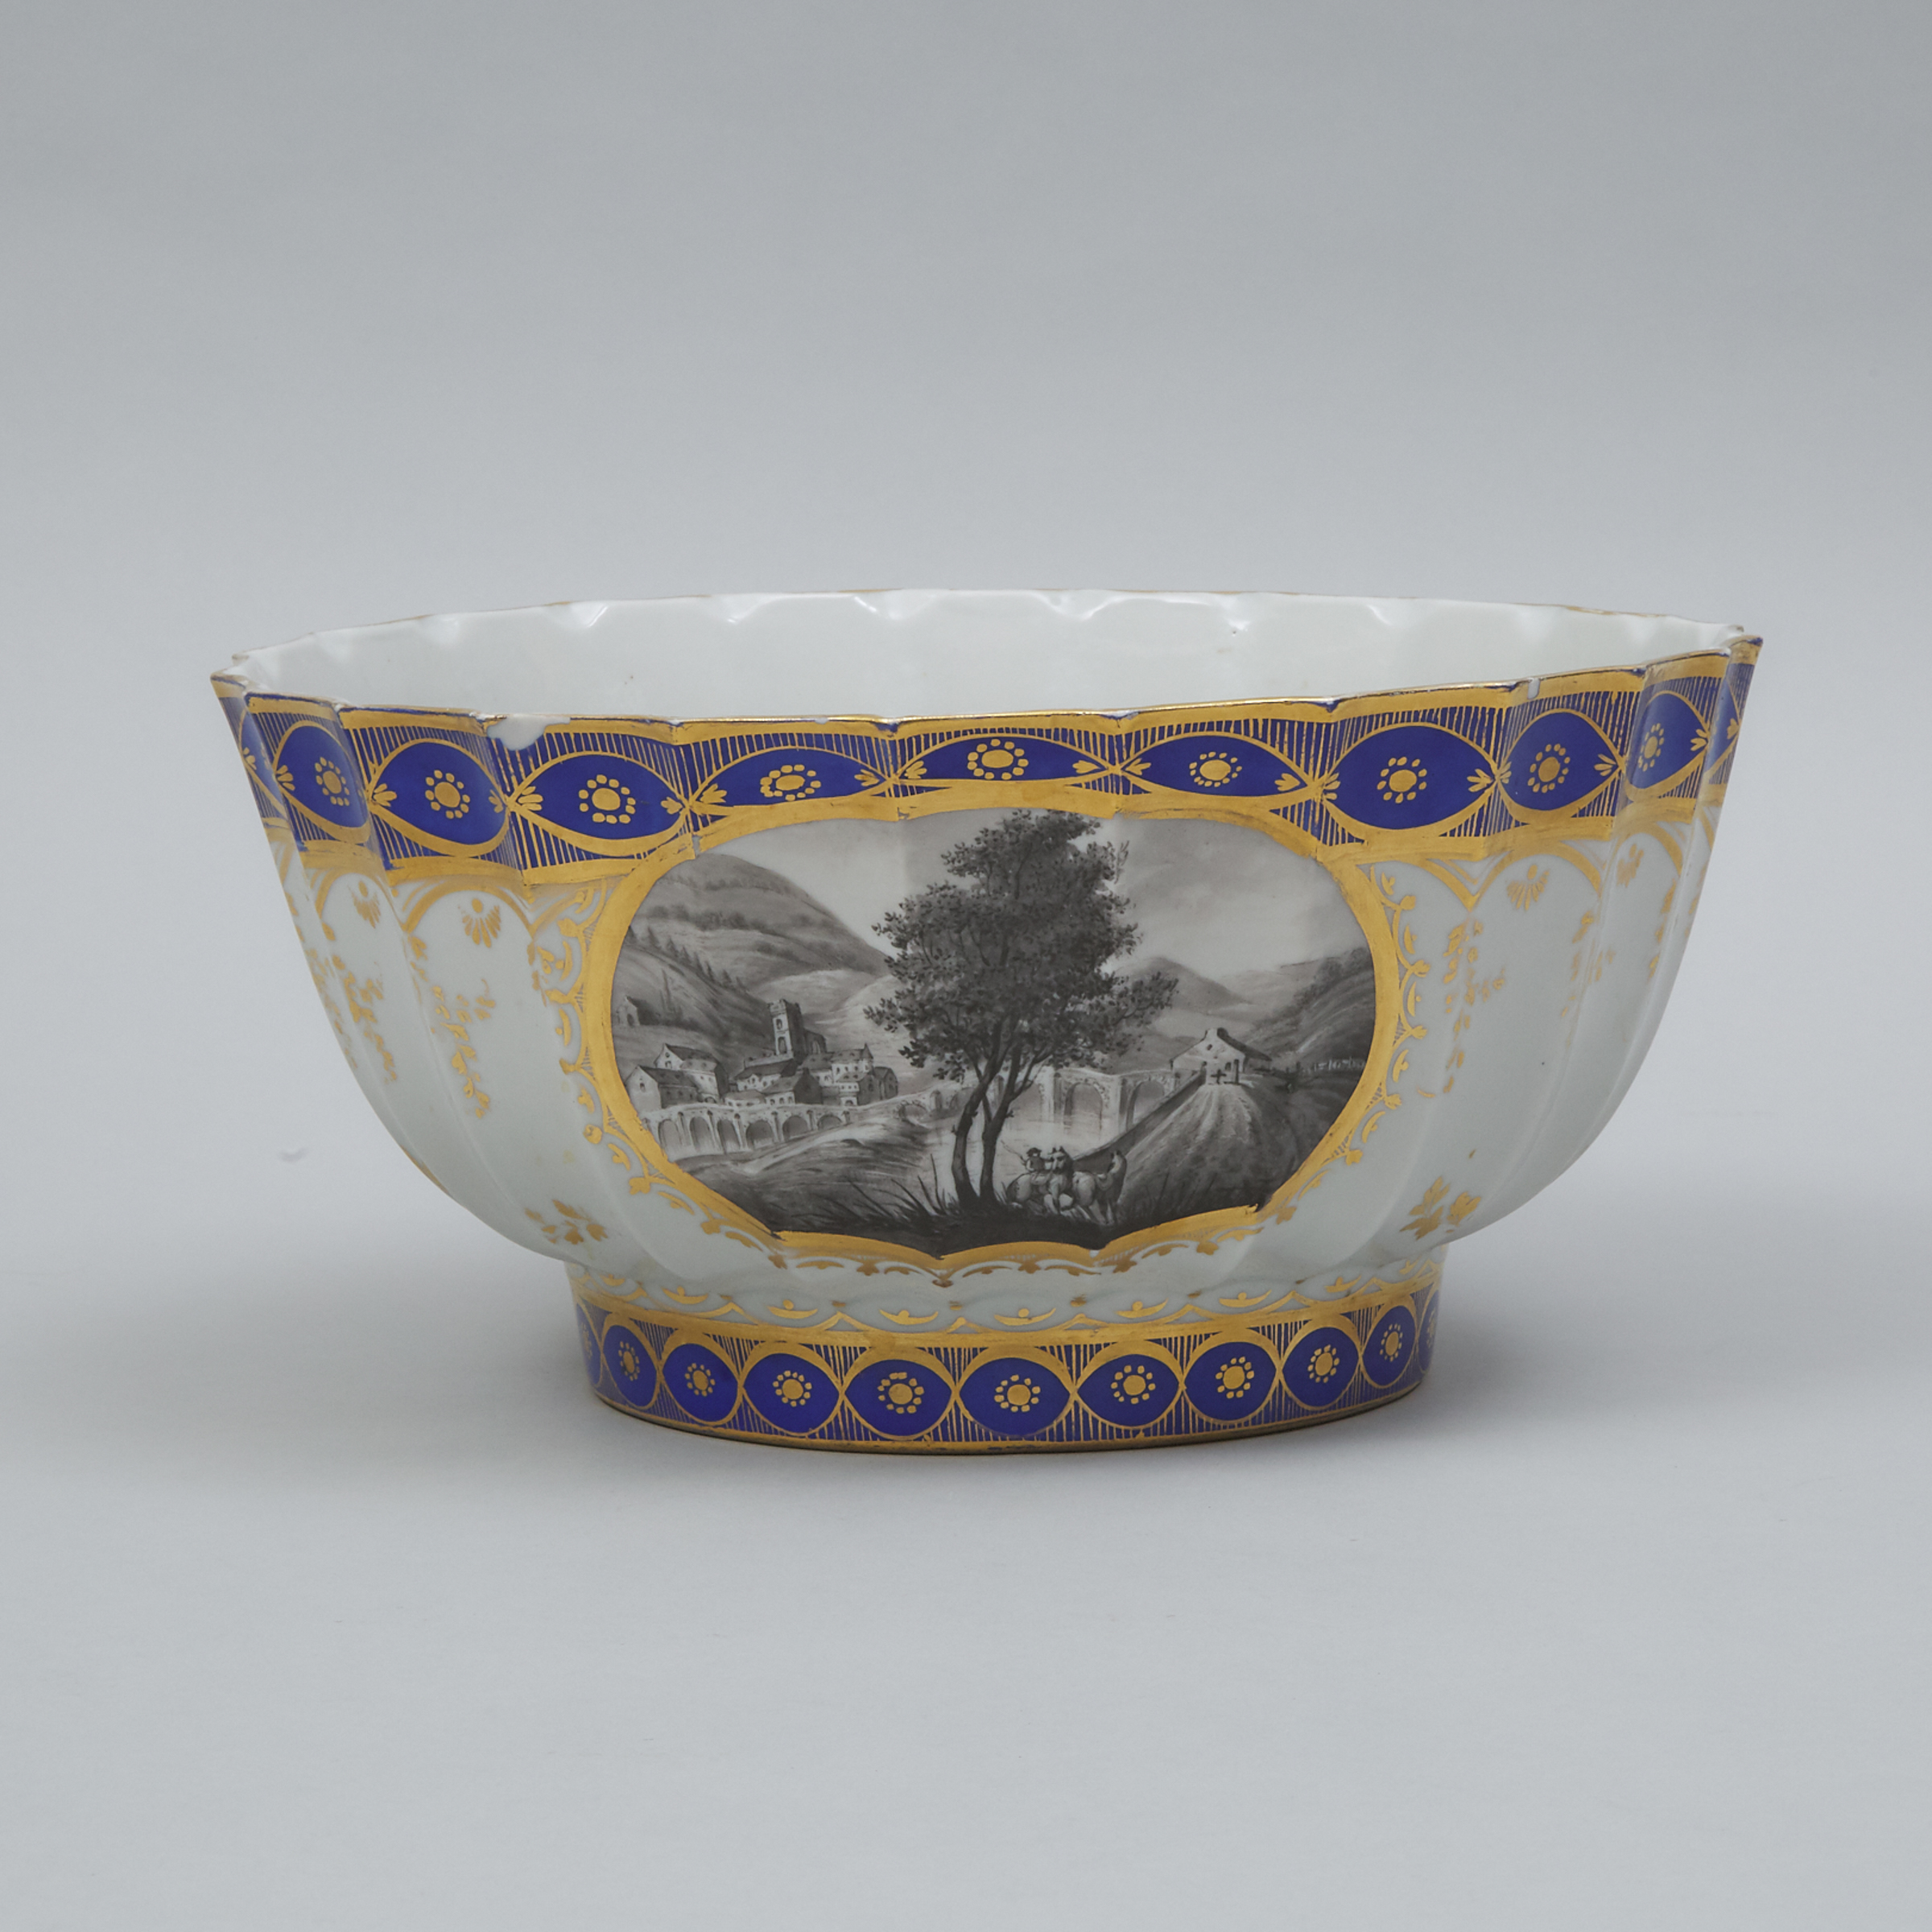 French Porcelain Large Fluted Bowl, probably Samson, c.1900